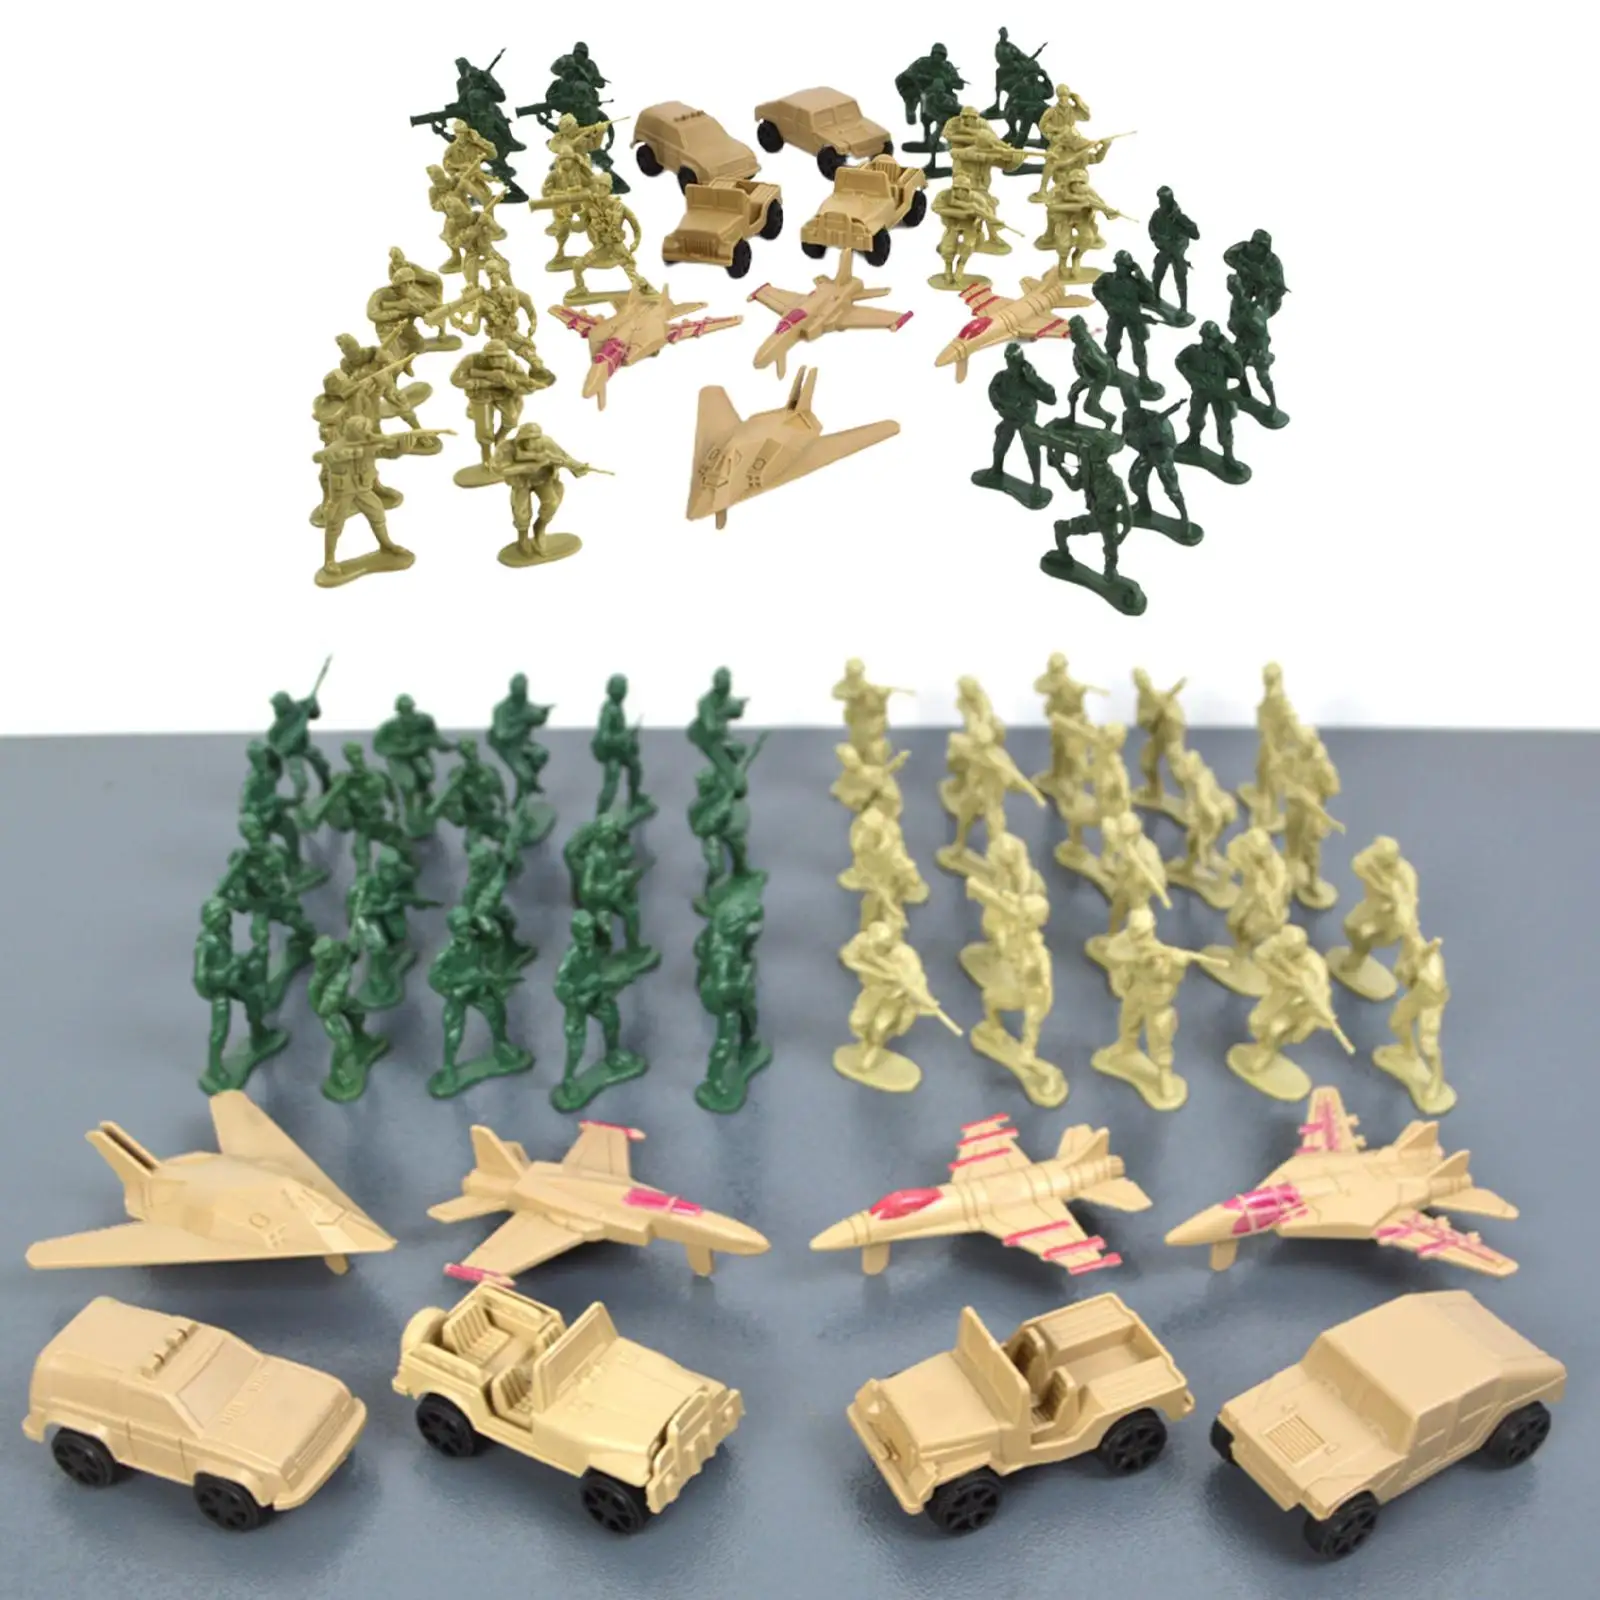 

Экшн-фигурка Solider 48x, игровой набор, сцена битвы для ролевых игр для взрослых, детские подарки, образовательная игрушка, расположение военных игр